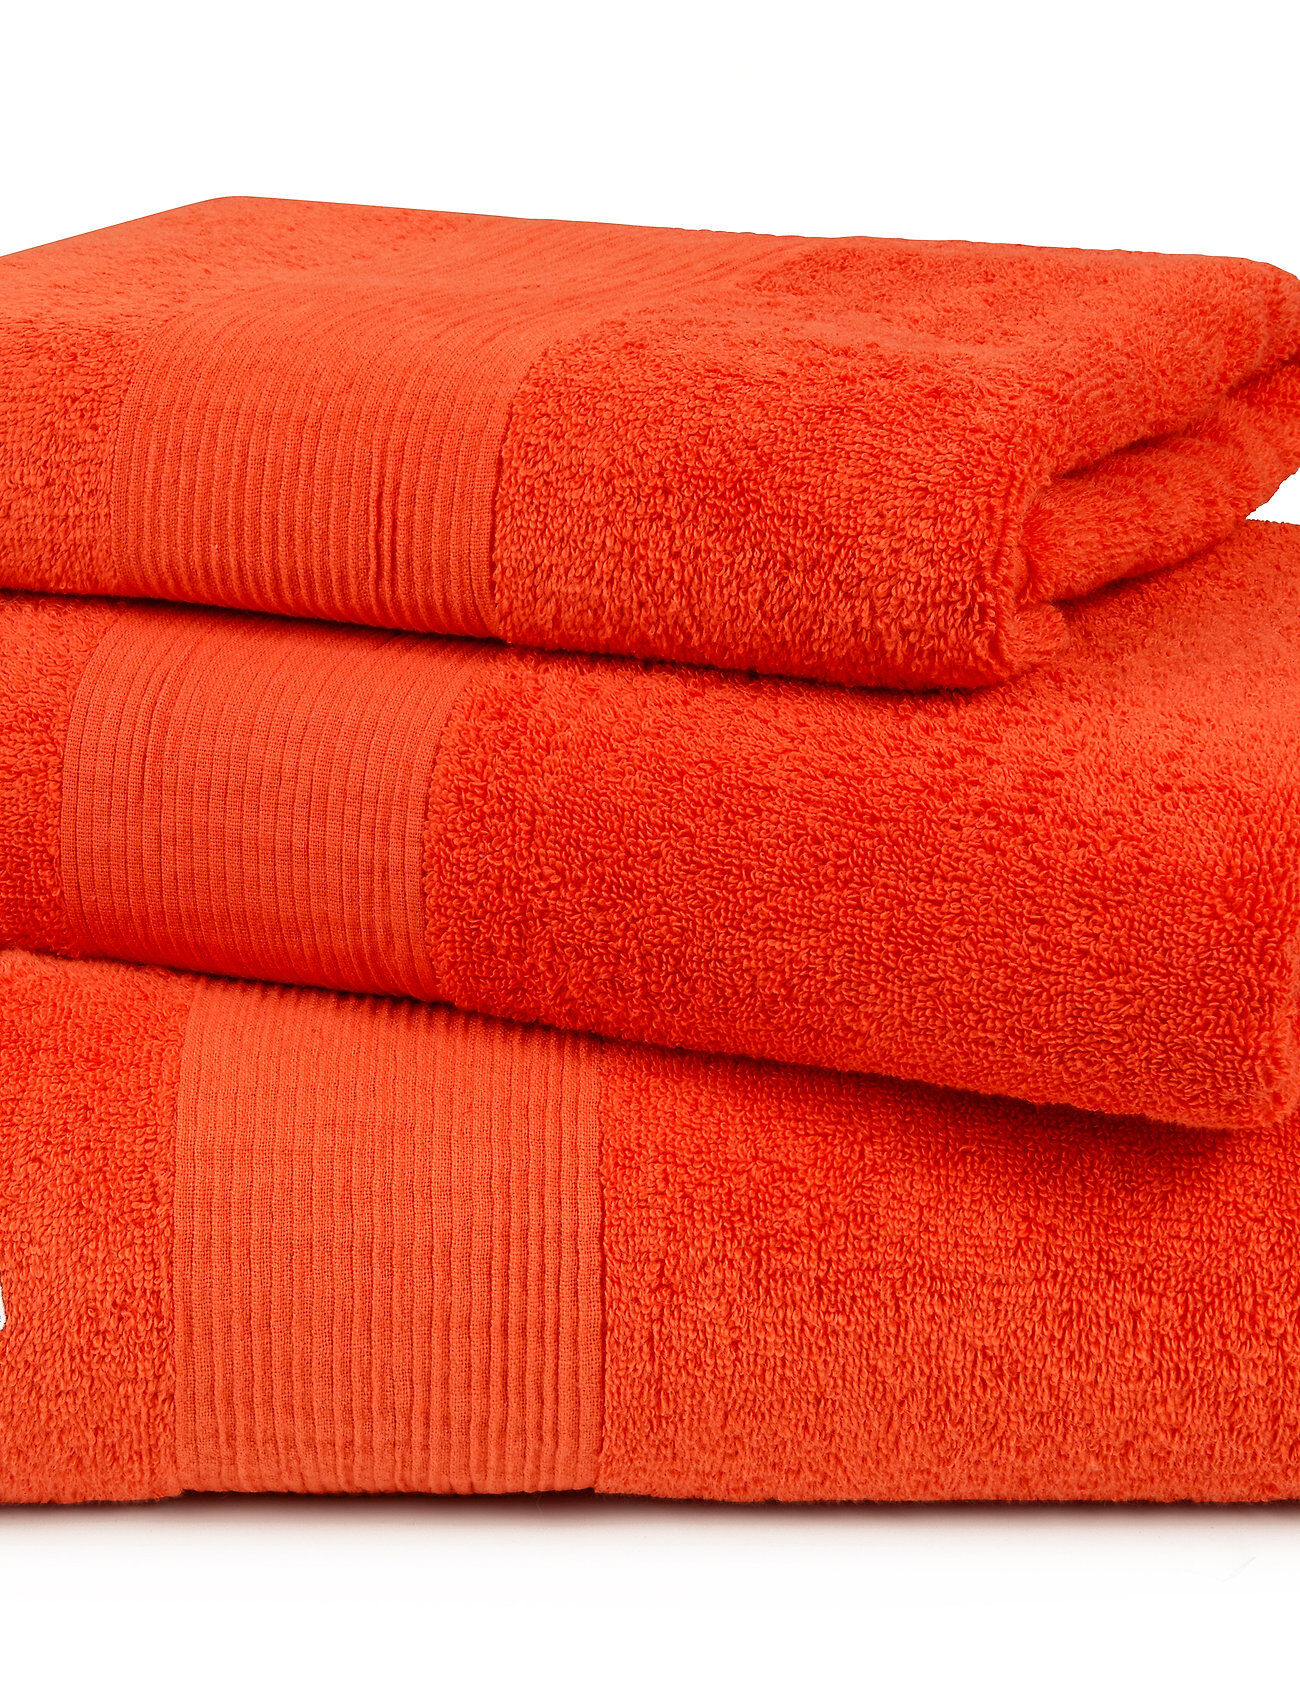 Lacoste Home Llecroco Handtowel Home Textiles Bathroom Textiles Towels Oransje Lacoste Home